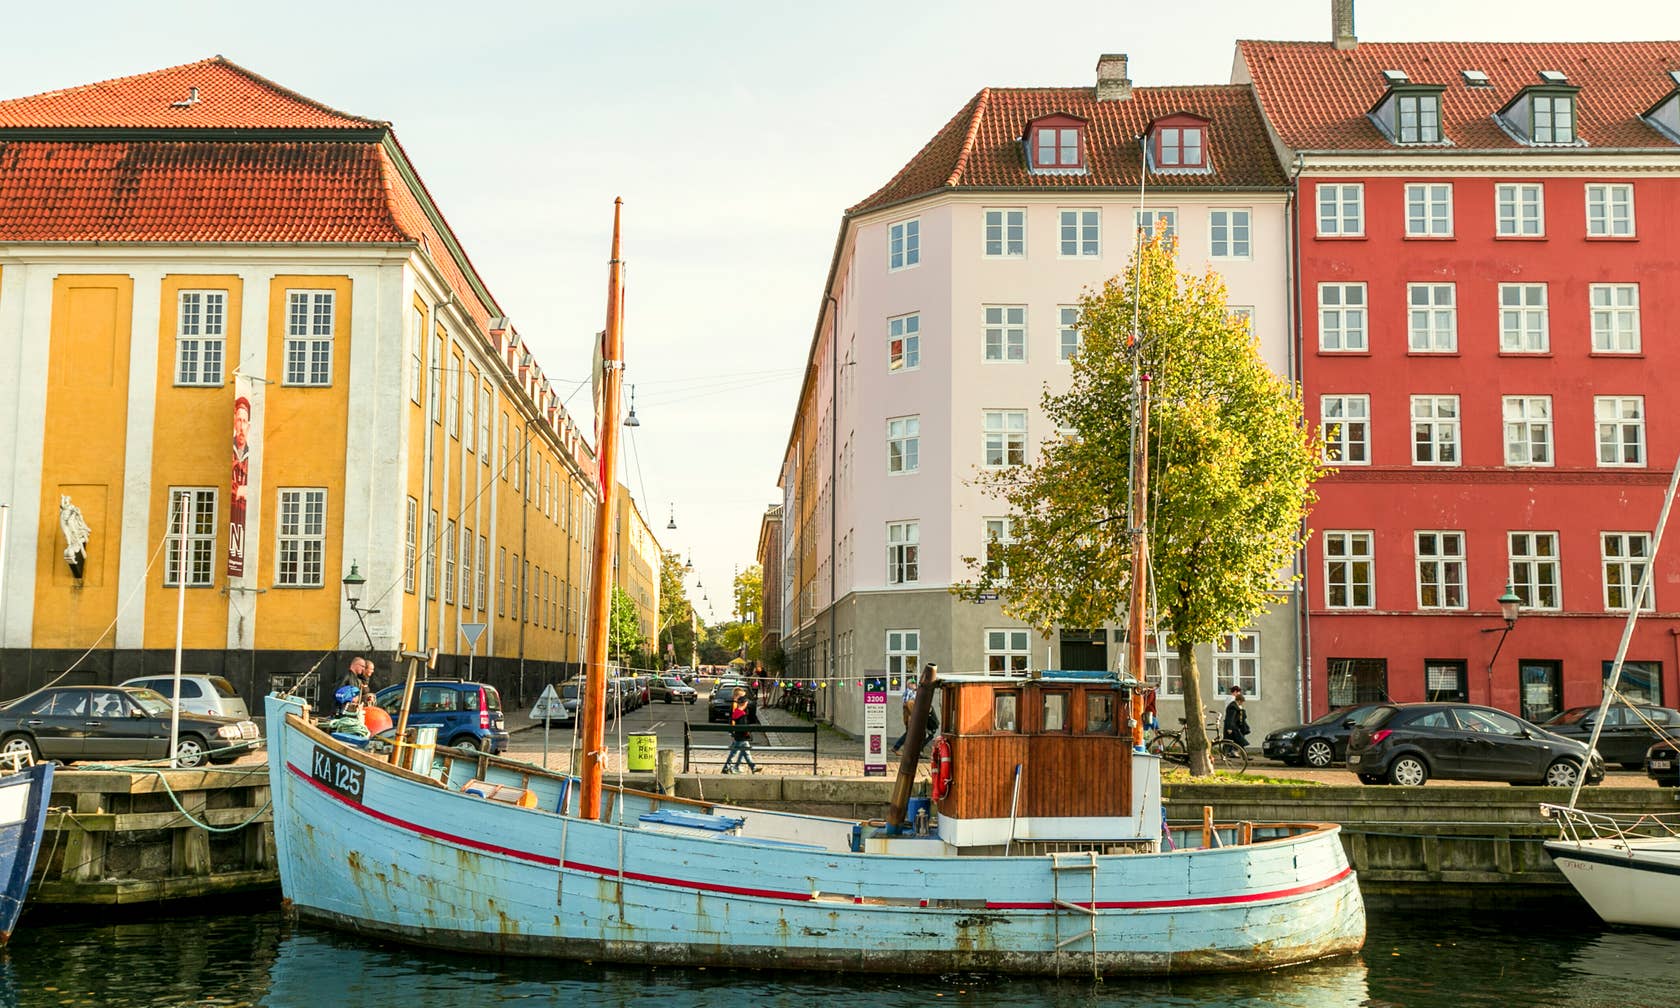 Bérbeadó nyaralók itt: Koppenhága